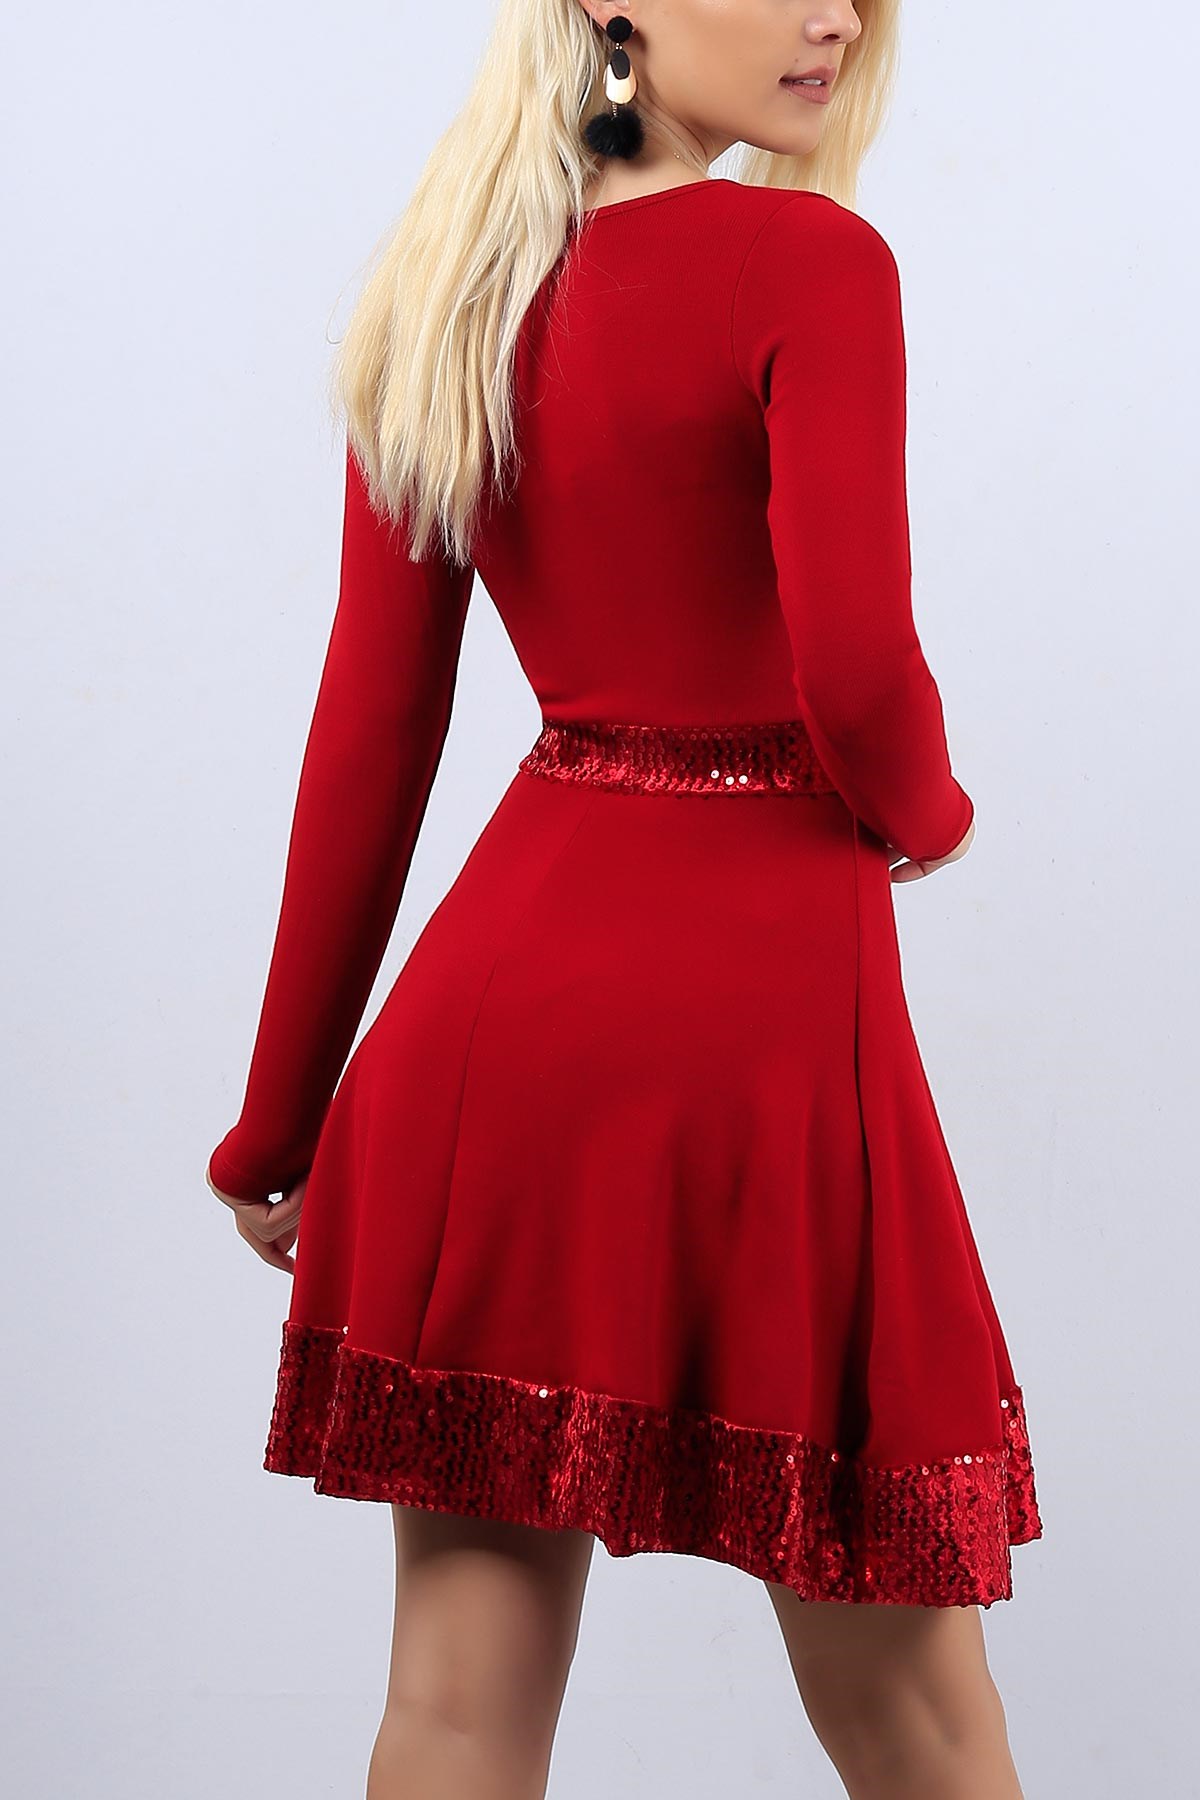 Kırmızı Pul Detaylı Bayan Triko Elbise 11081B